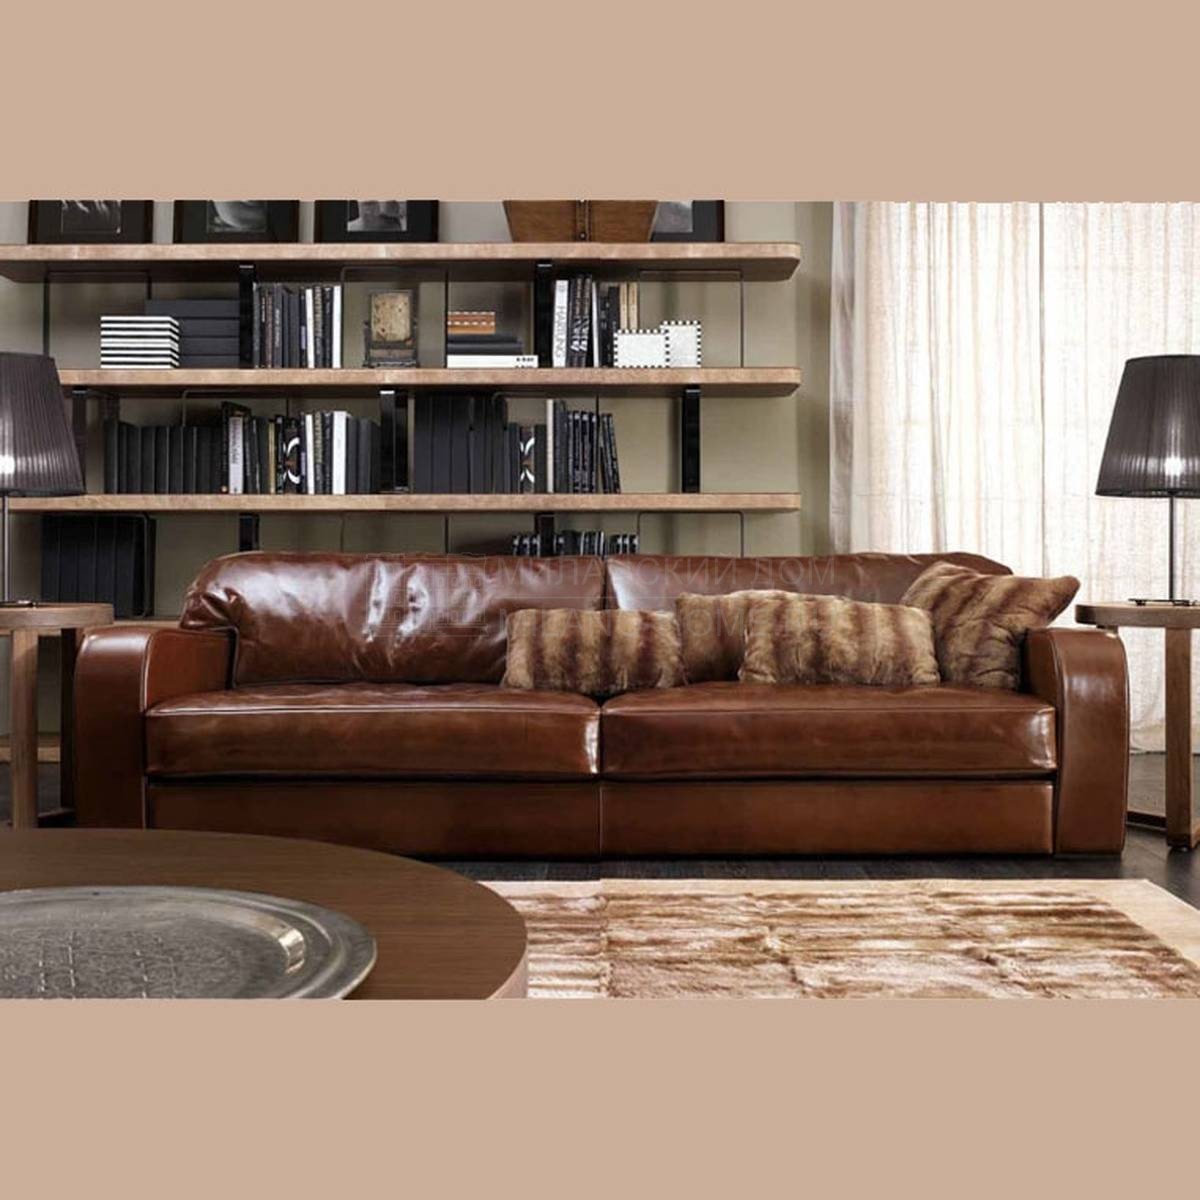 Прямой диван Martin sofa из Италии фабрики ULIVI